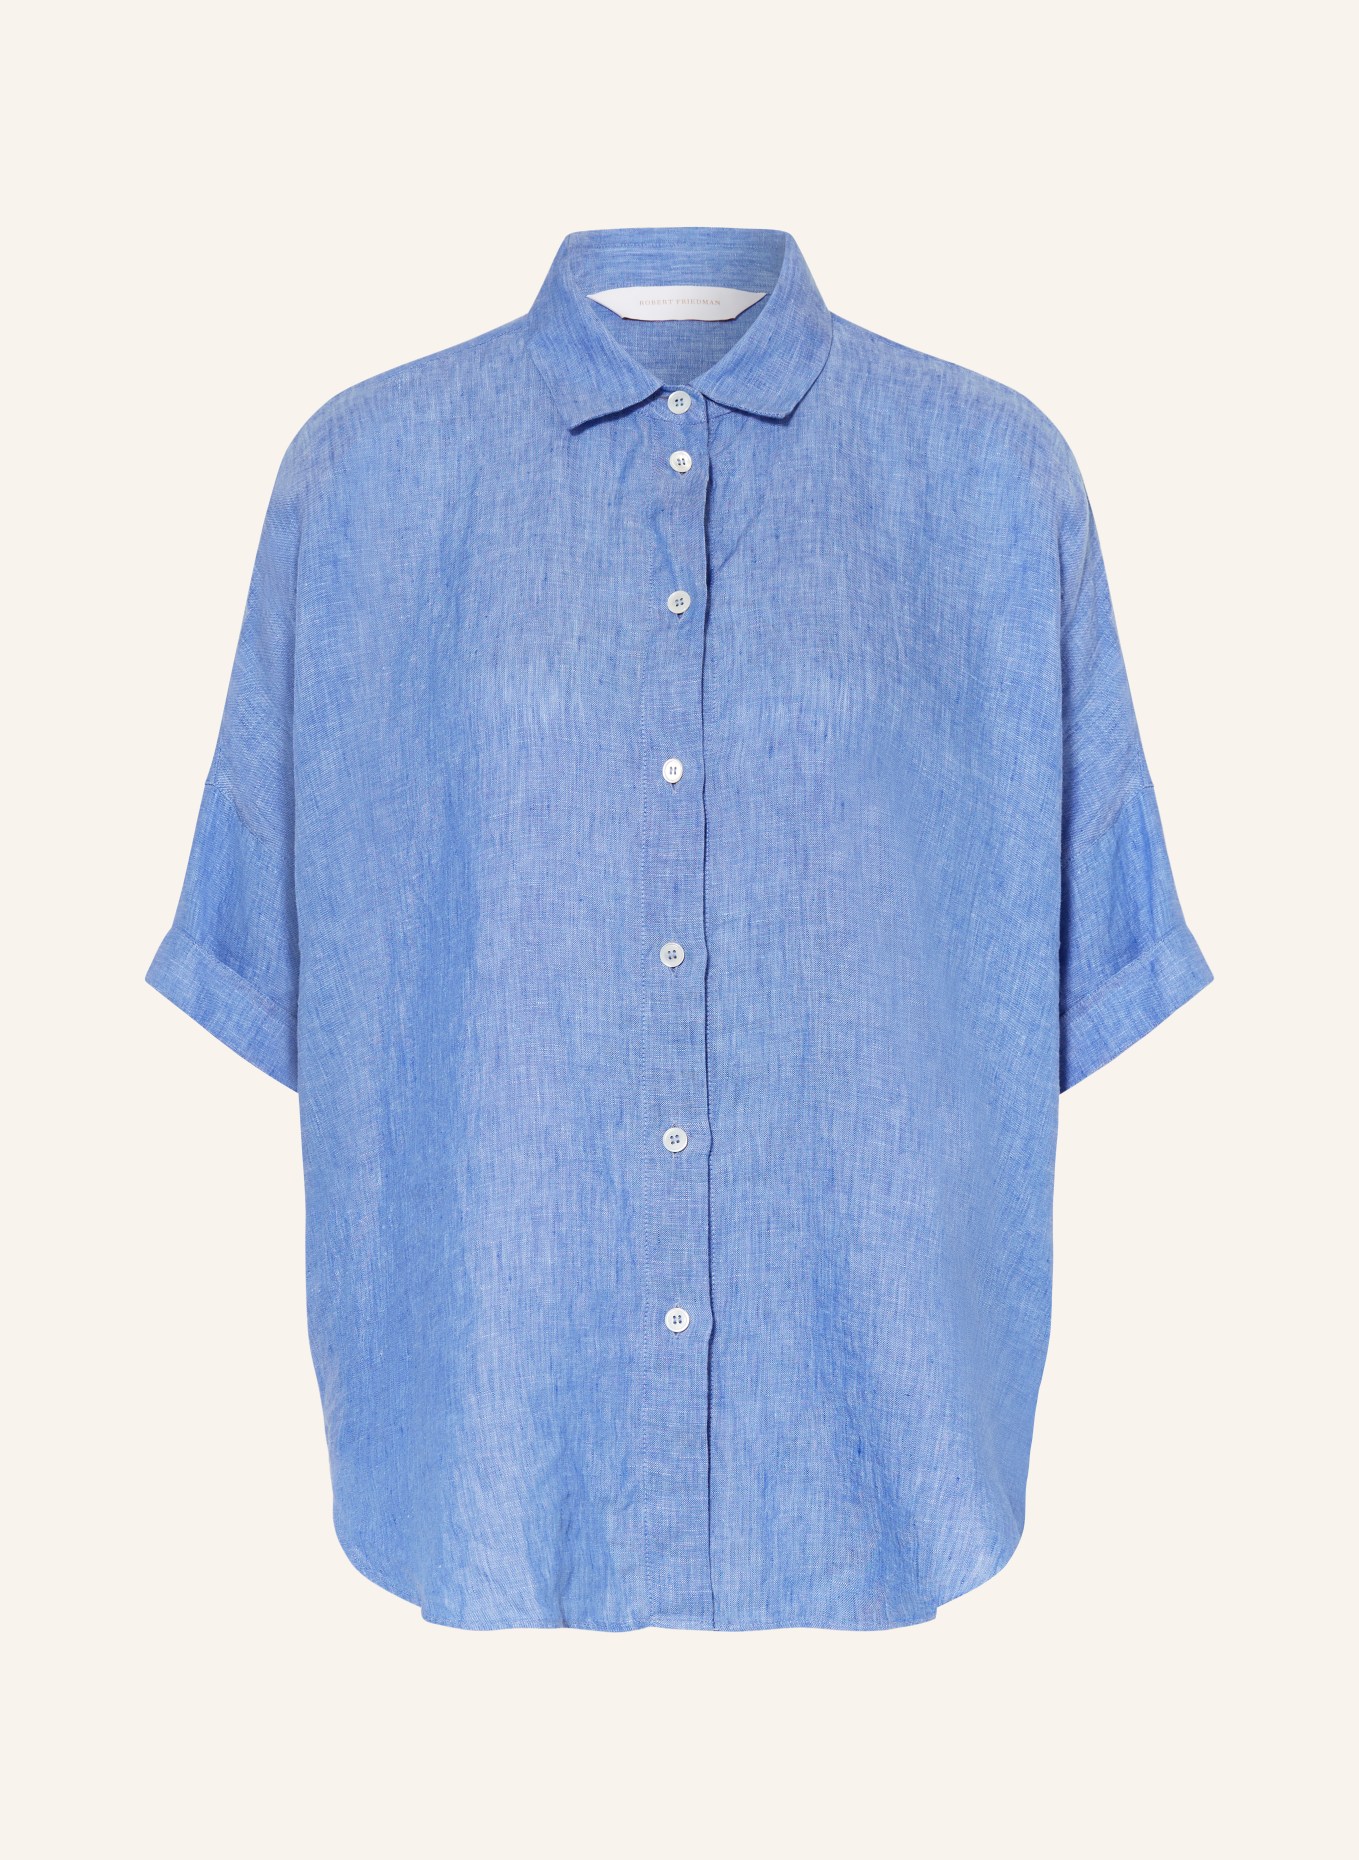 ROBERT FRIEDMAN Shirt blouse BIANCAL made of linen, Color: LIGHT BLUE (Image 1)